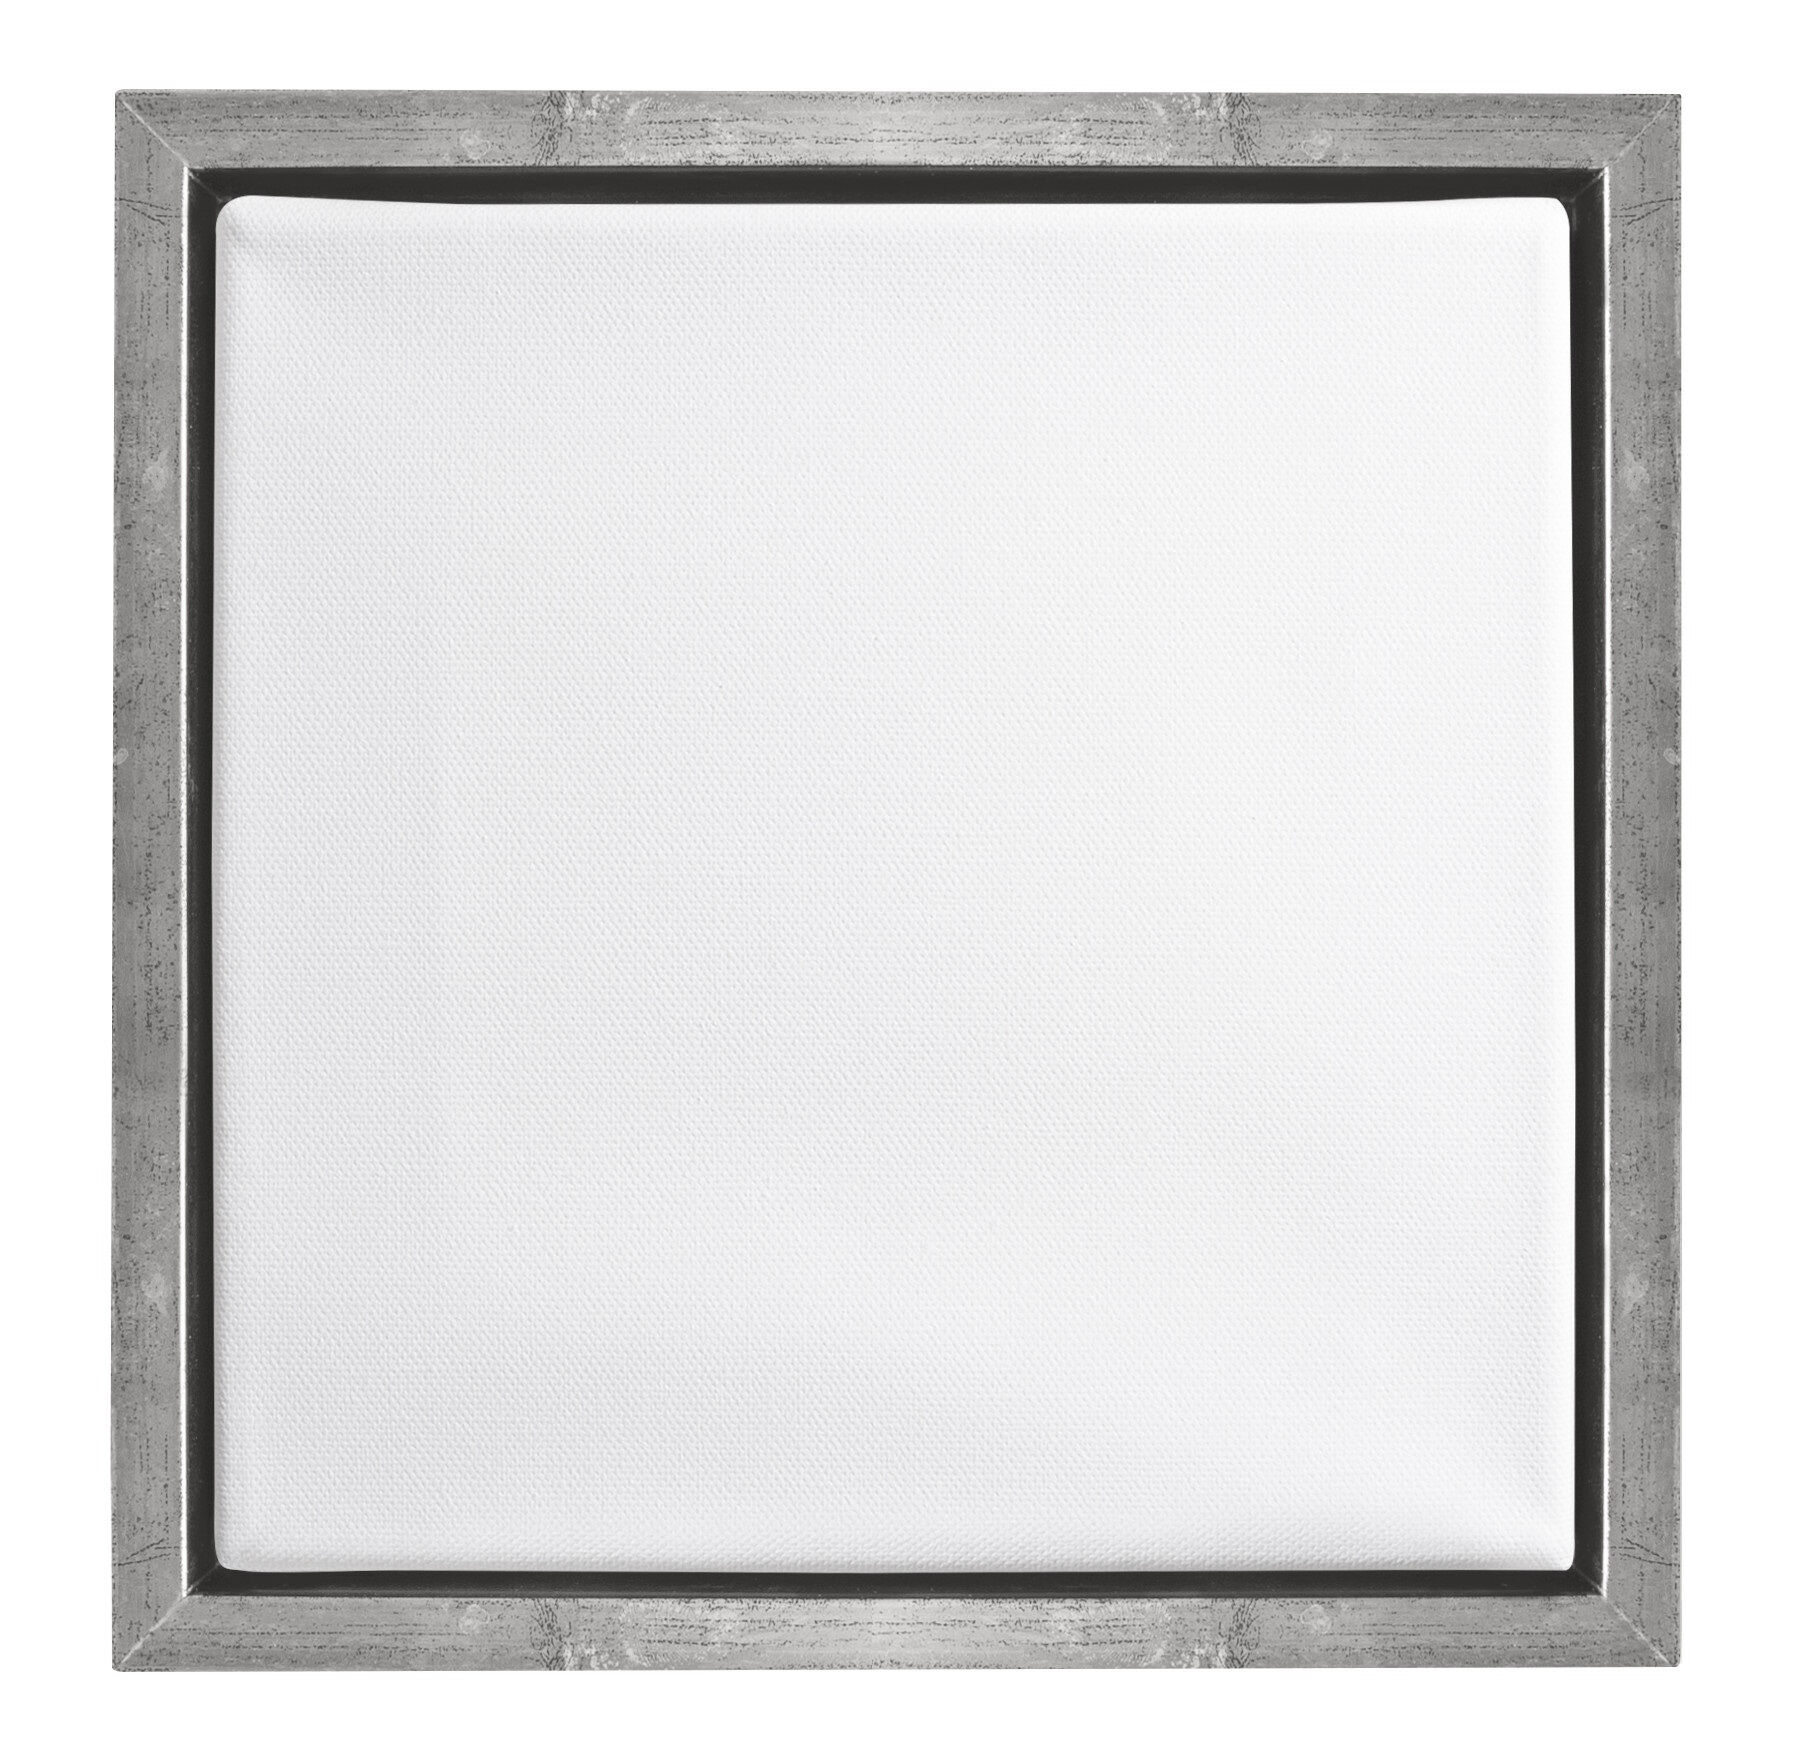 NEU Keilrahmen in Bilderrahmen mit Schattenfuge Silber, 20 x 20 cm KR + Schrauben - 1 Stück